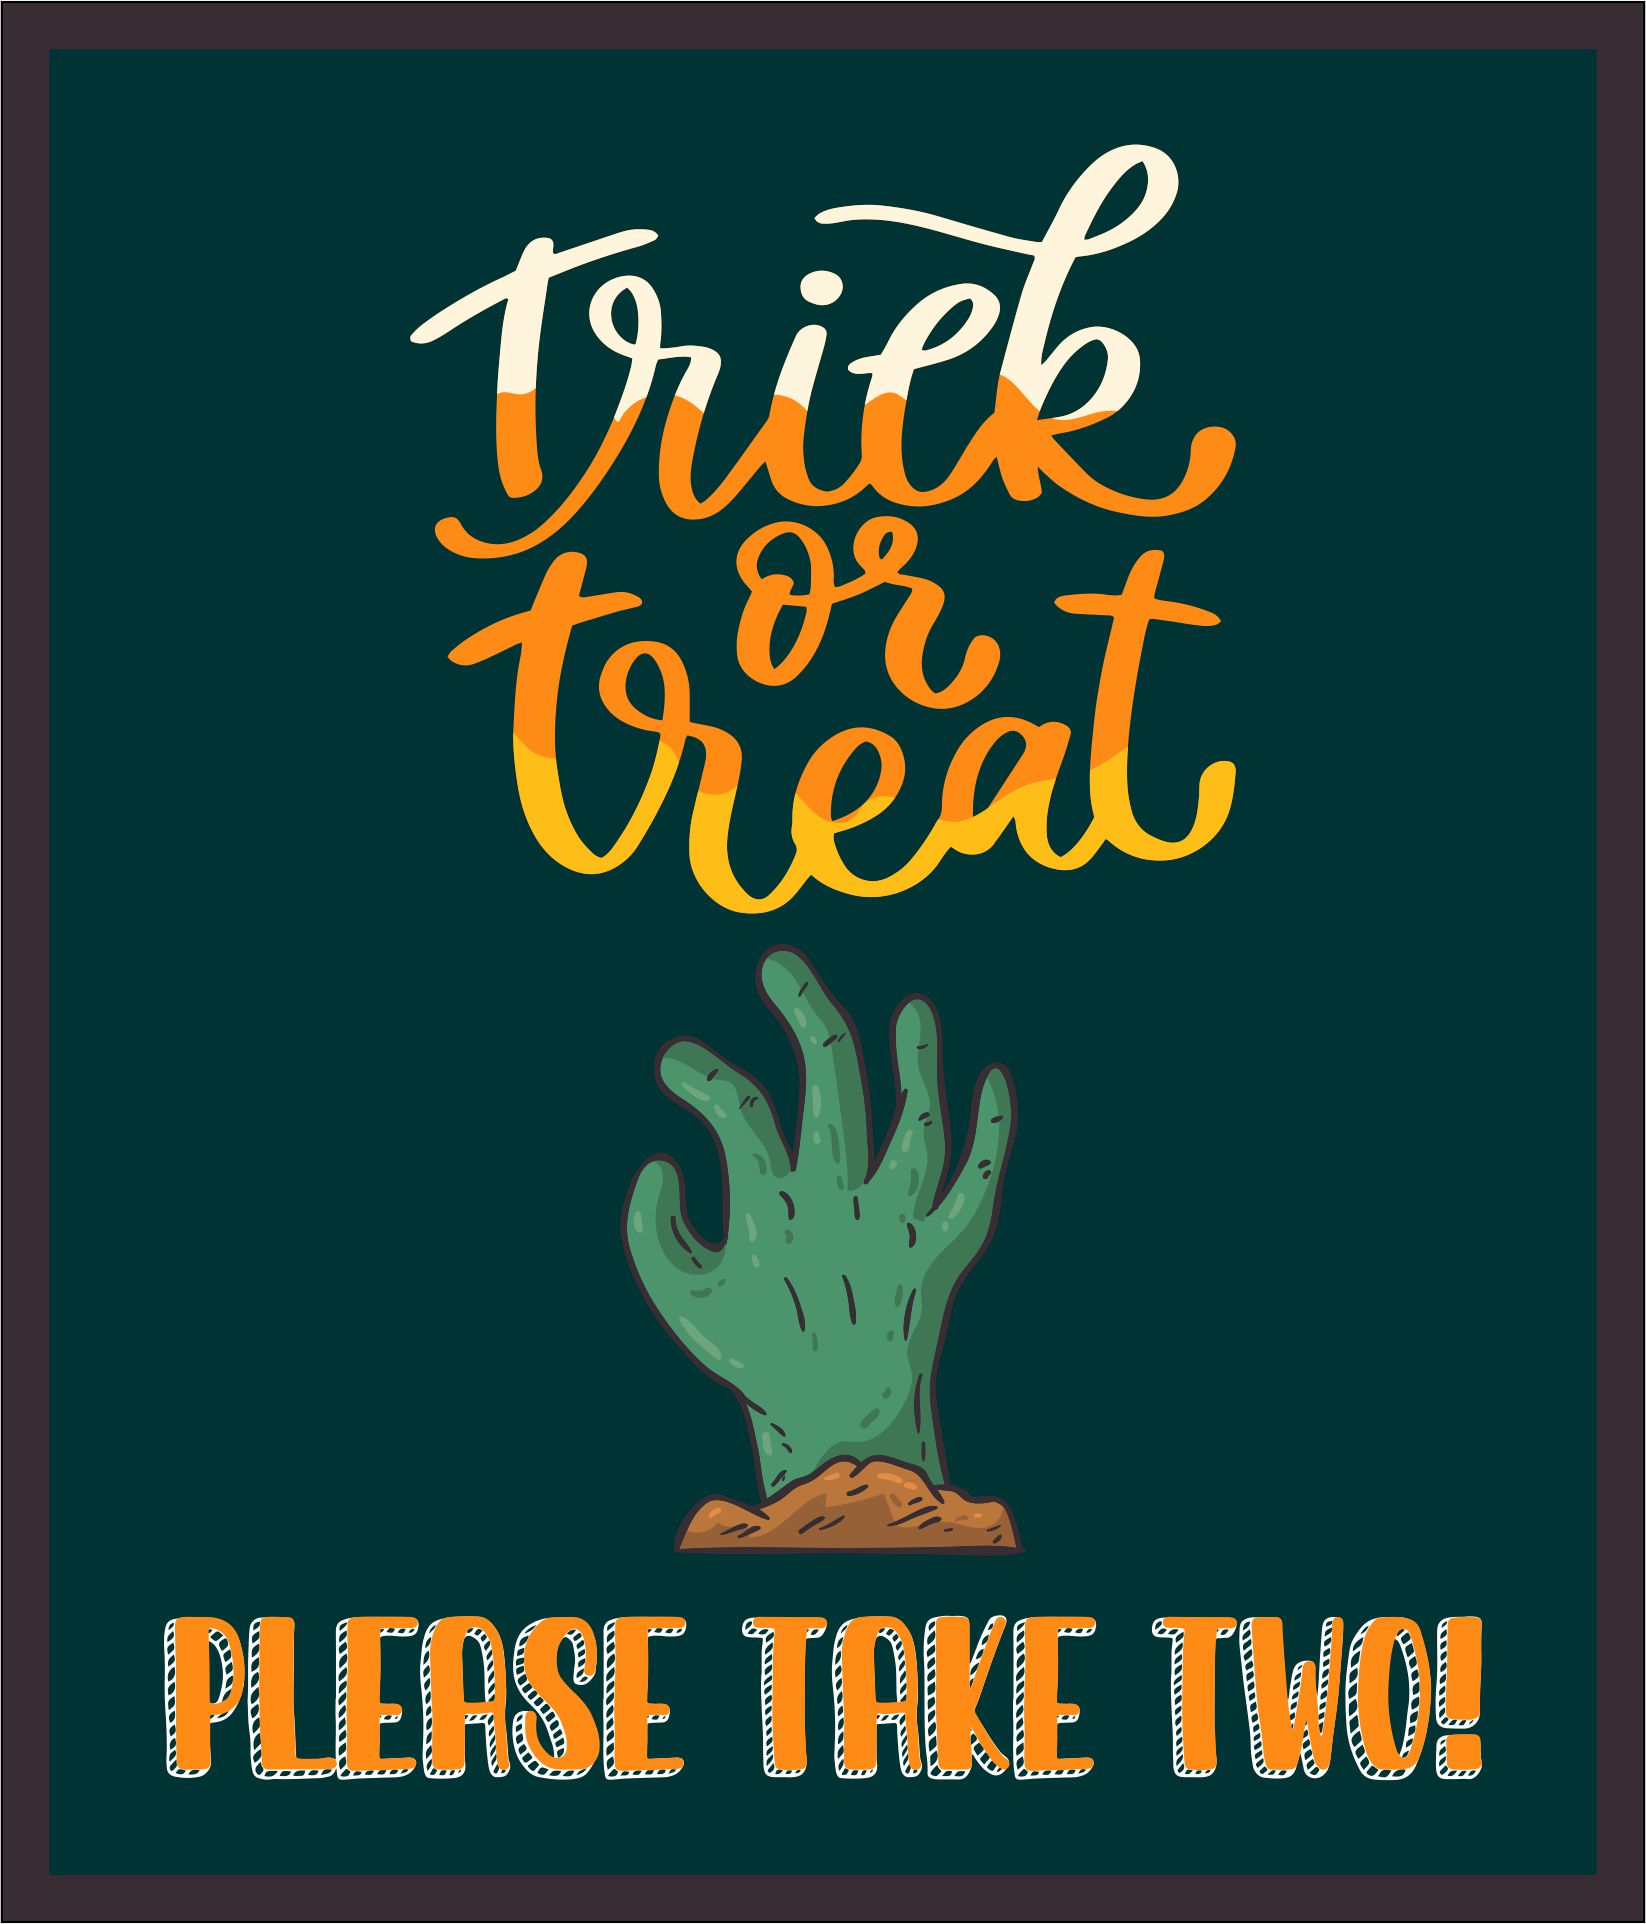 15 Best Halloween Signs Printable Take 2 Please